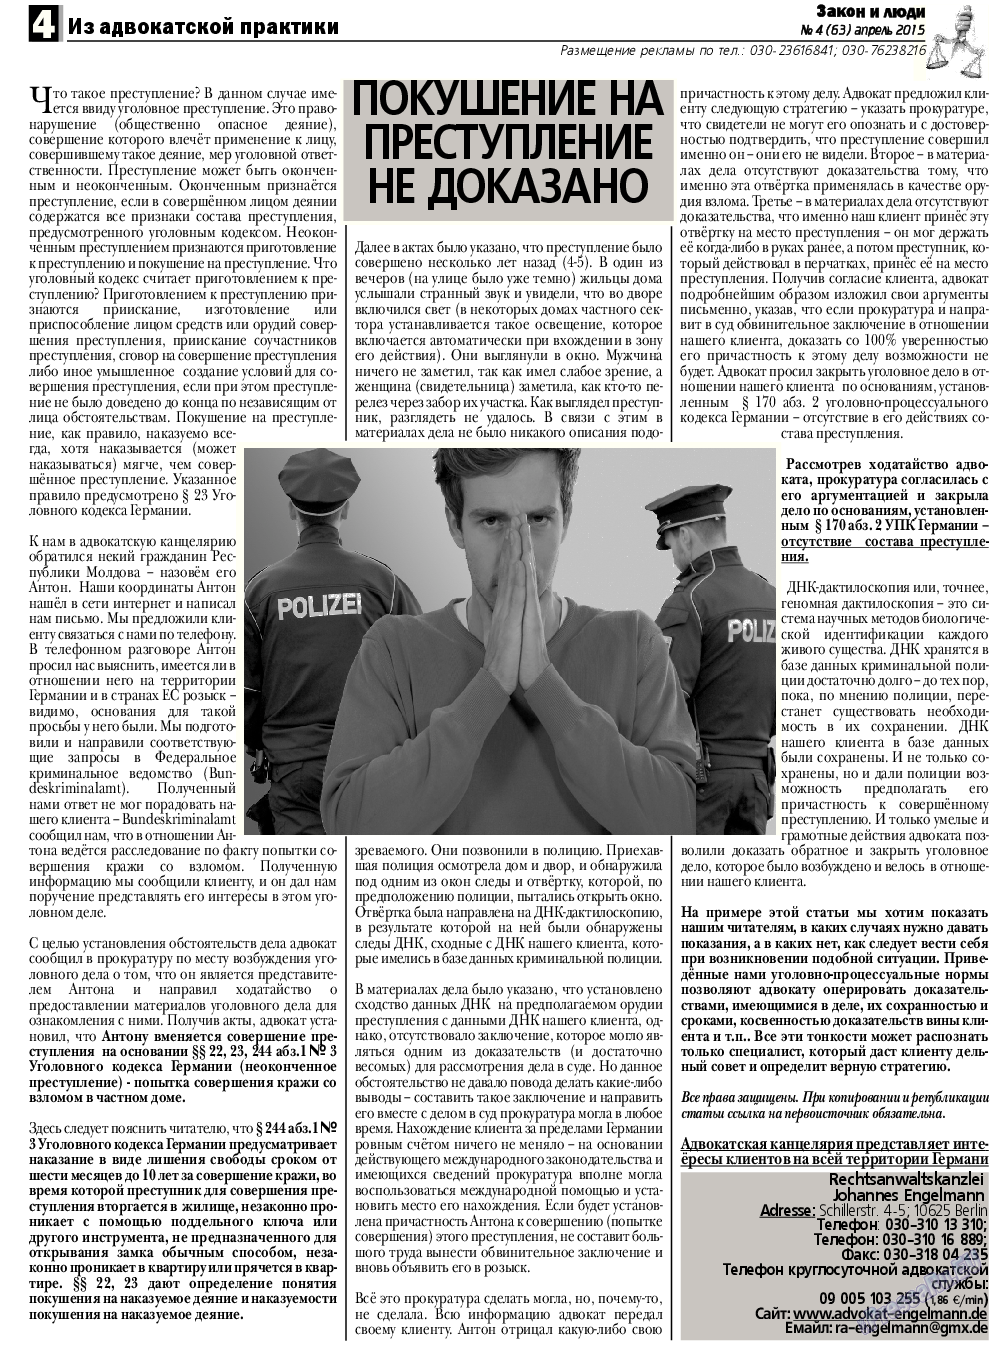 Закон и люди, газета. 2015 №4 стр.4